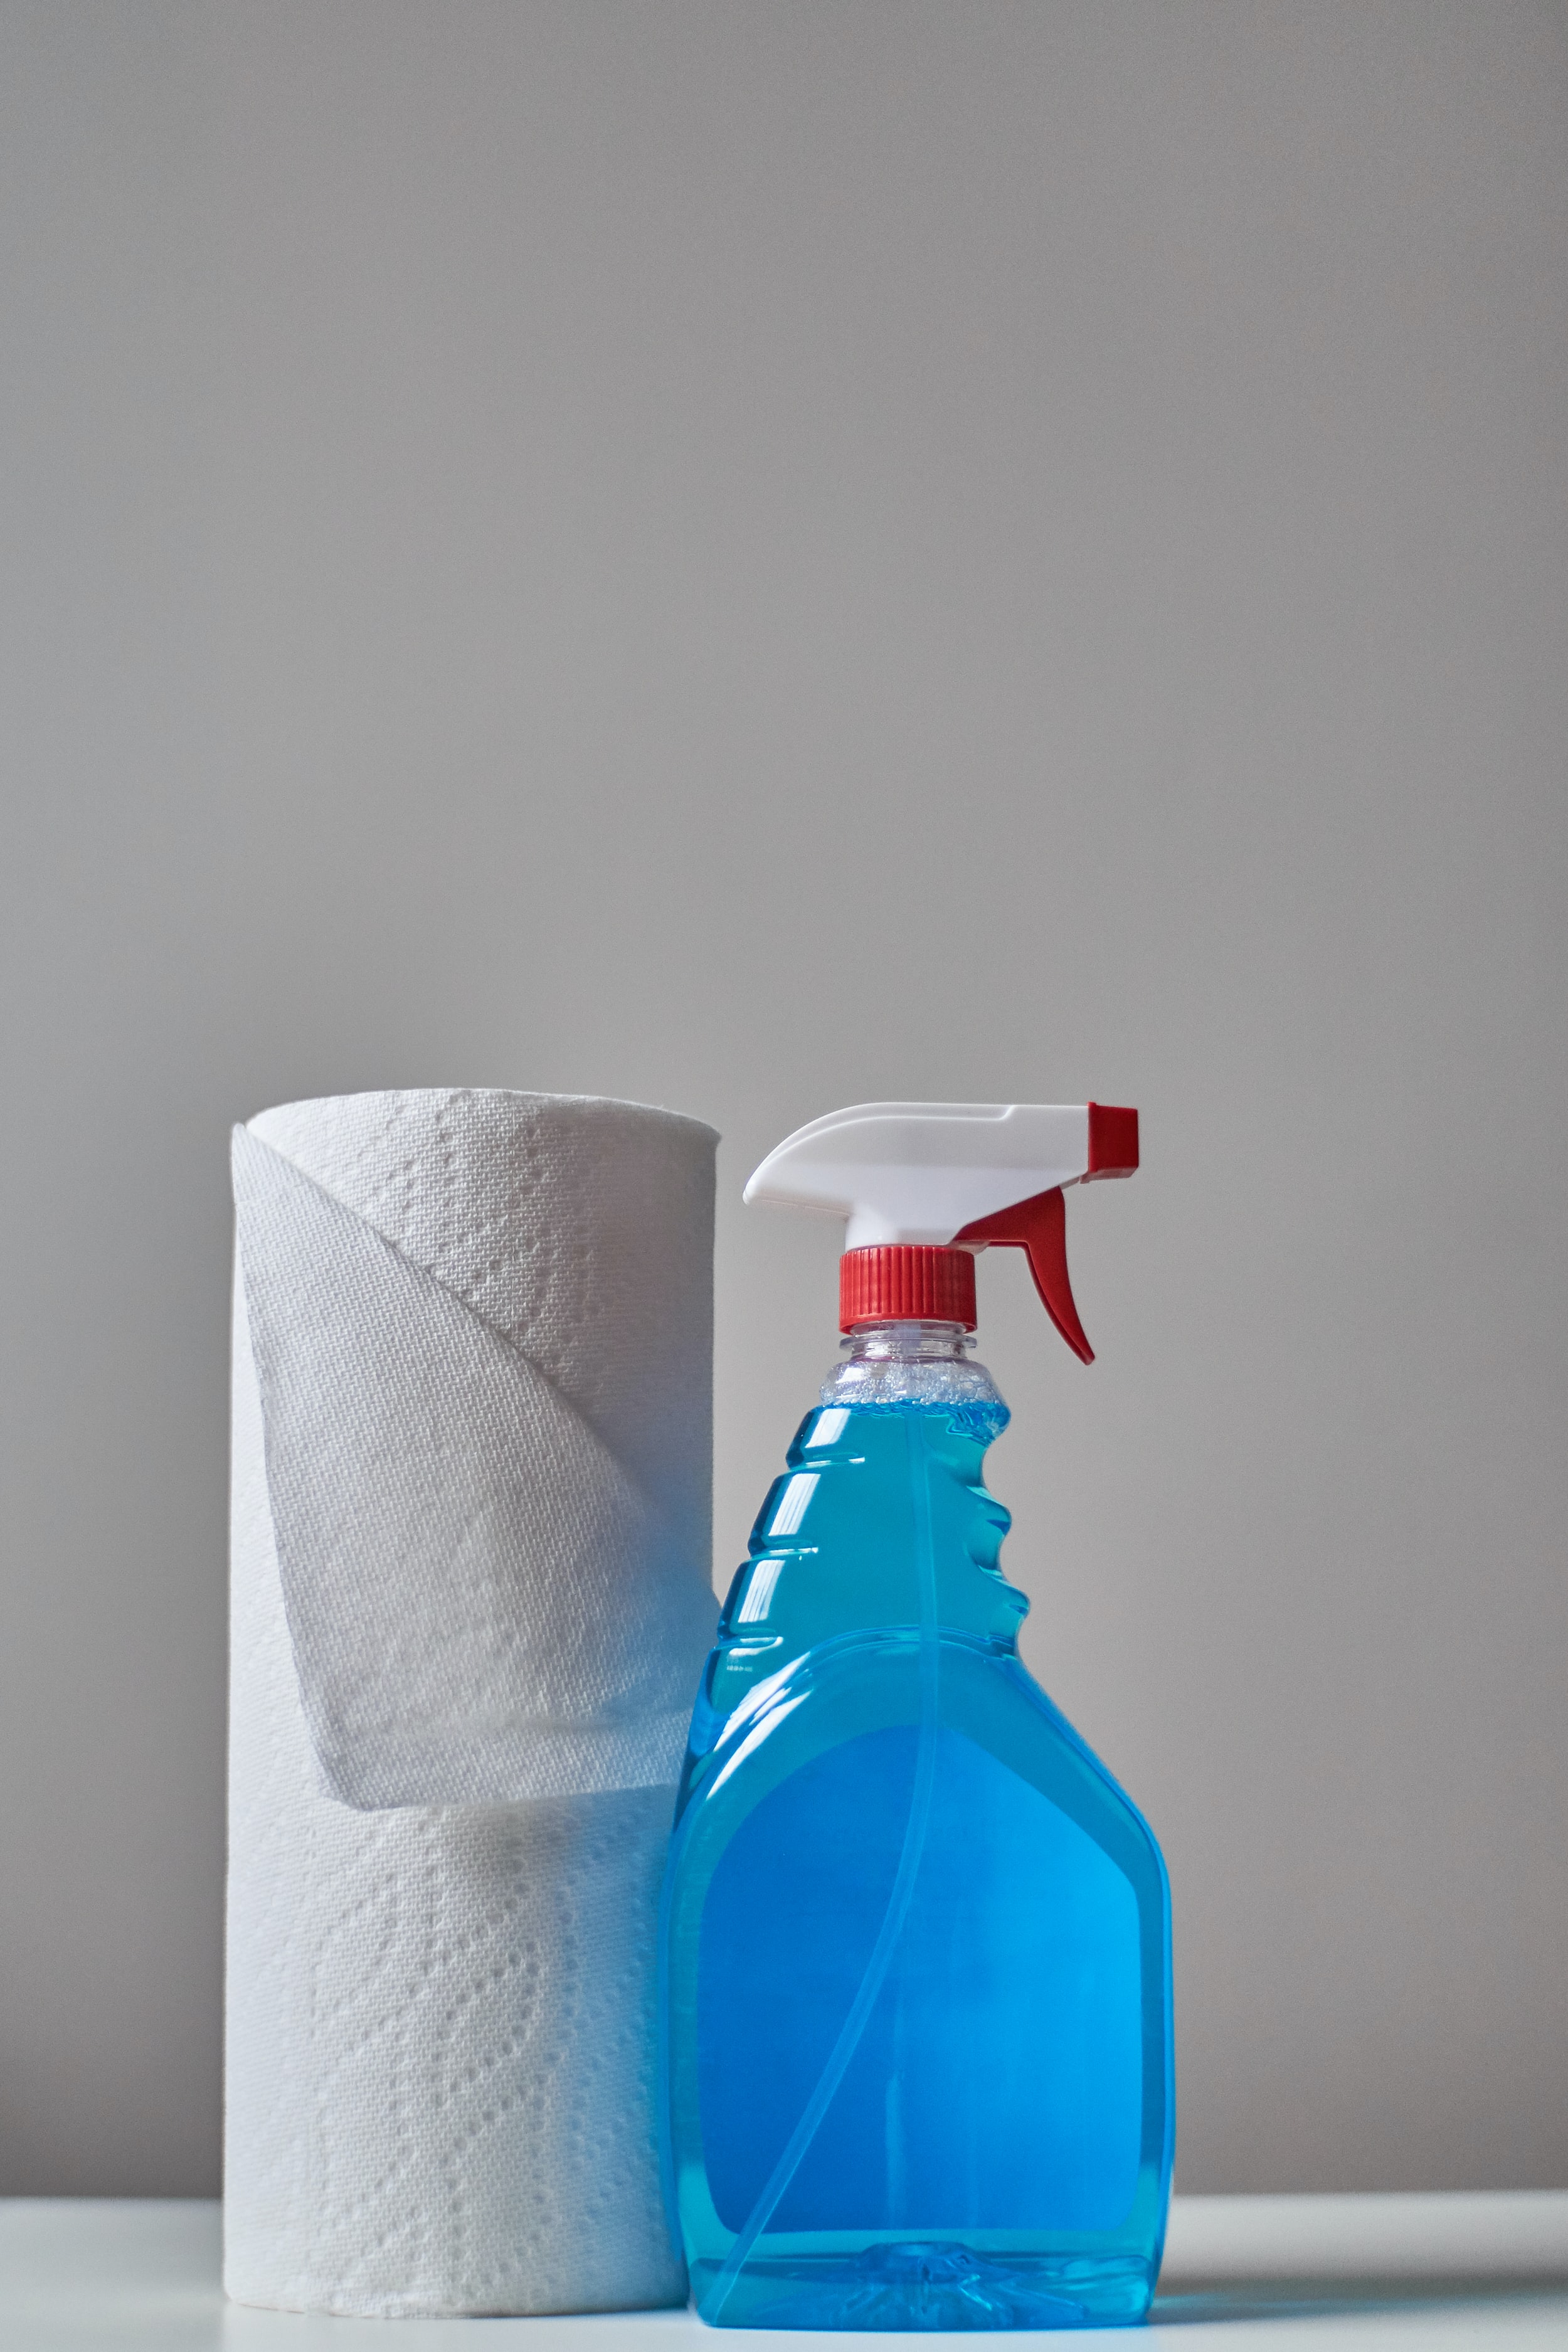 Βάλε τέλος στις 5 κακές συνήθειες που δυσκολεύουν το καθάρισμα του σπιτιού